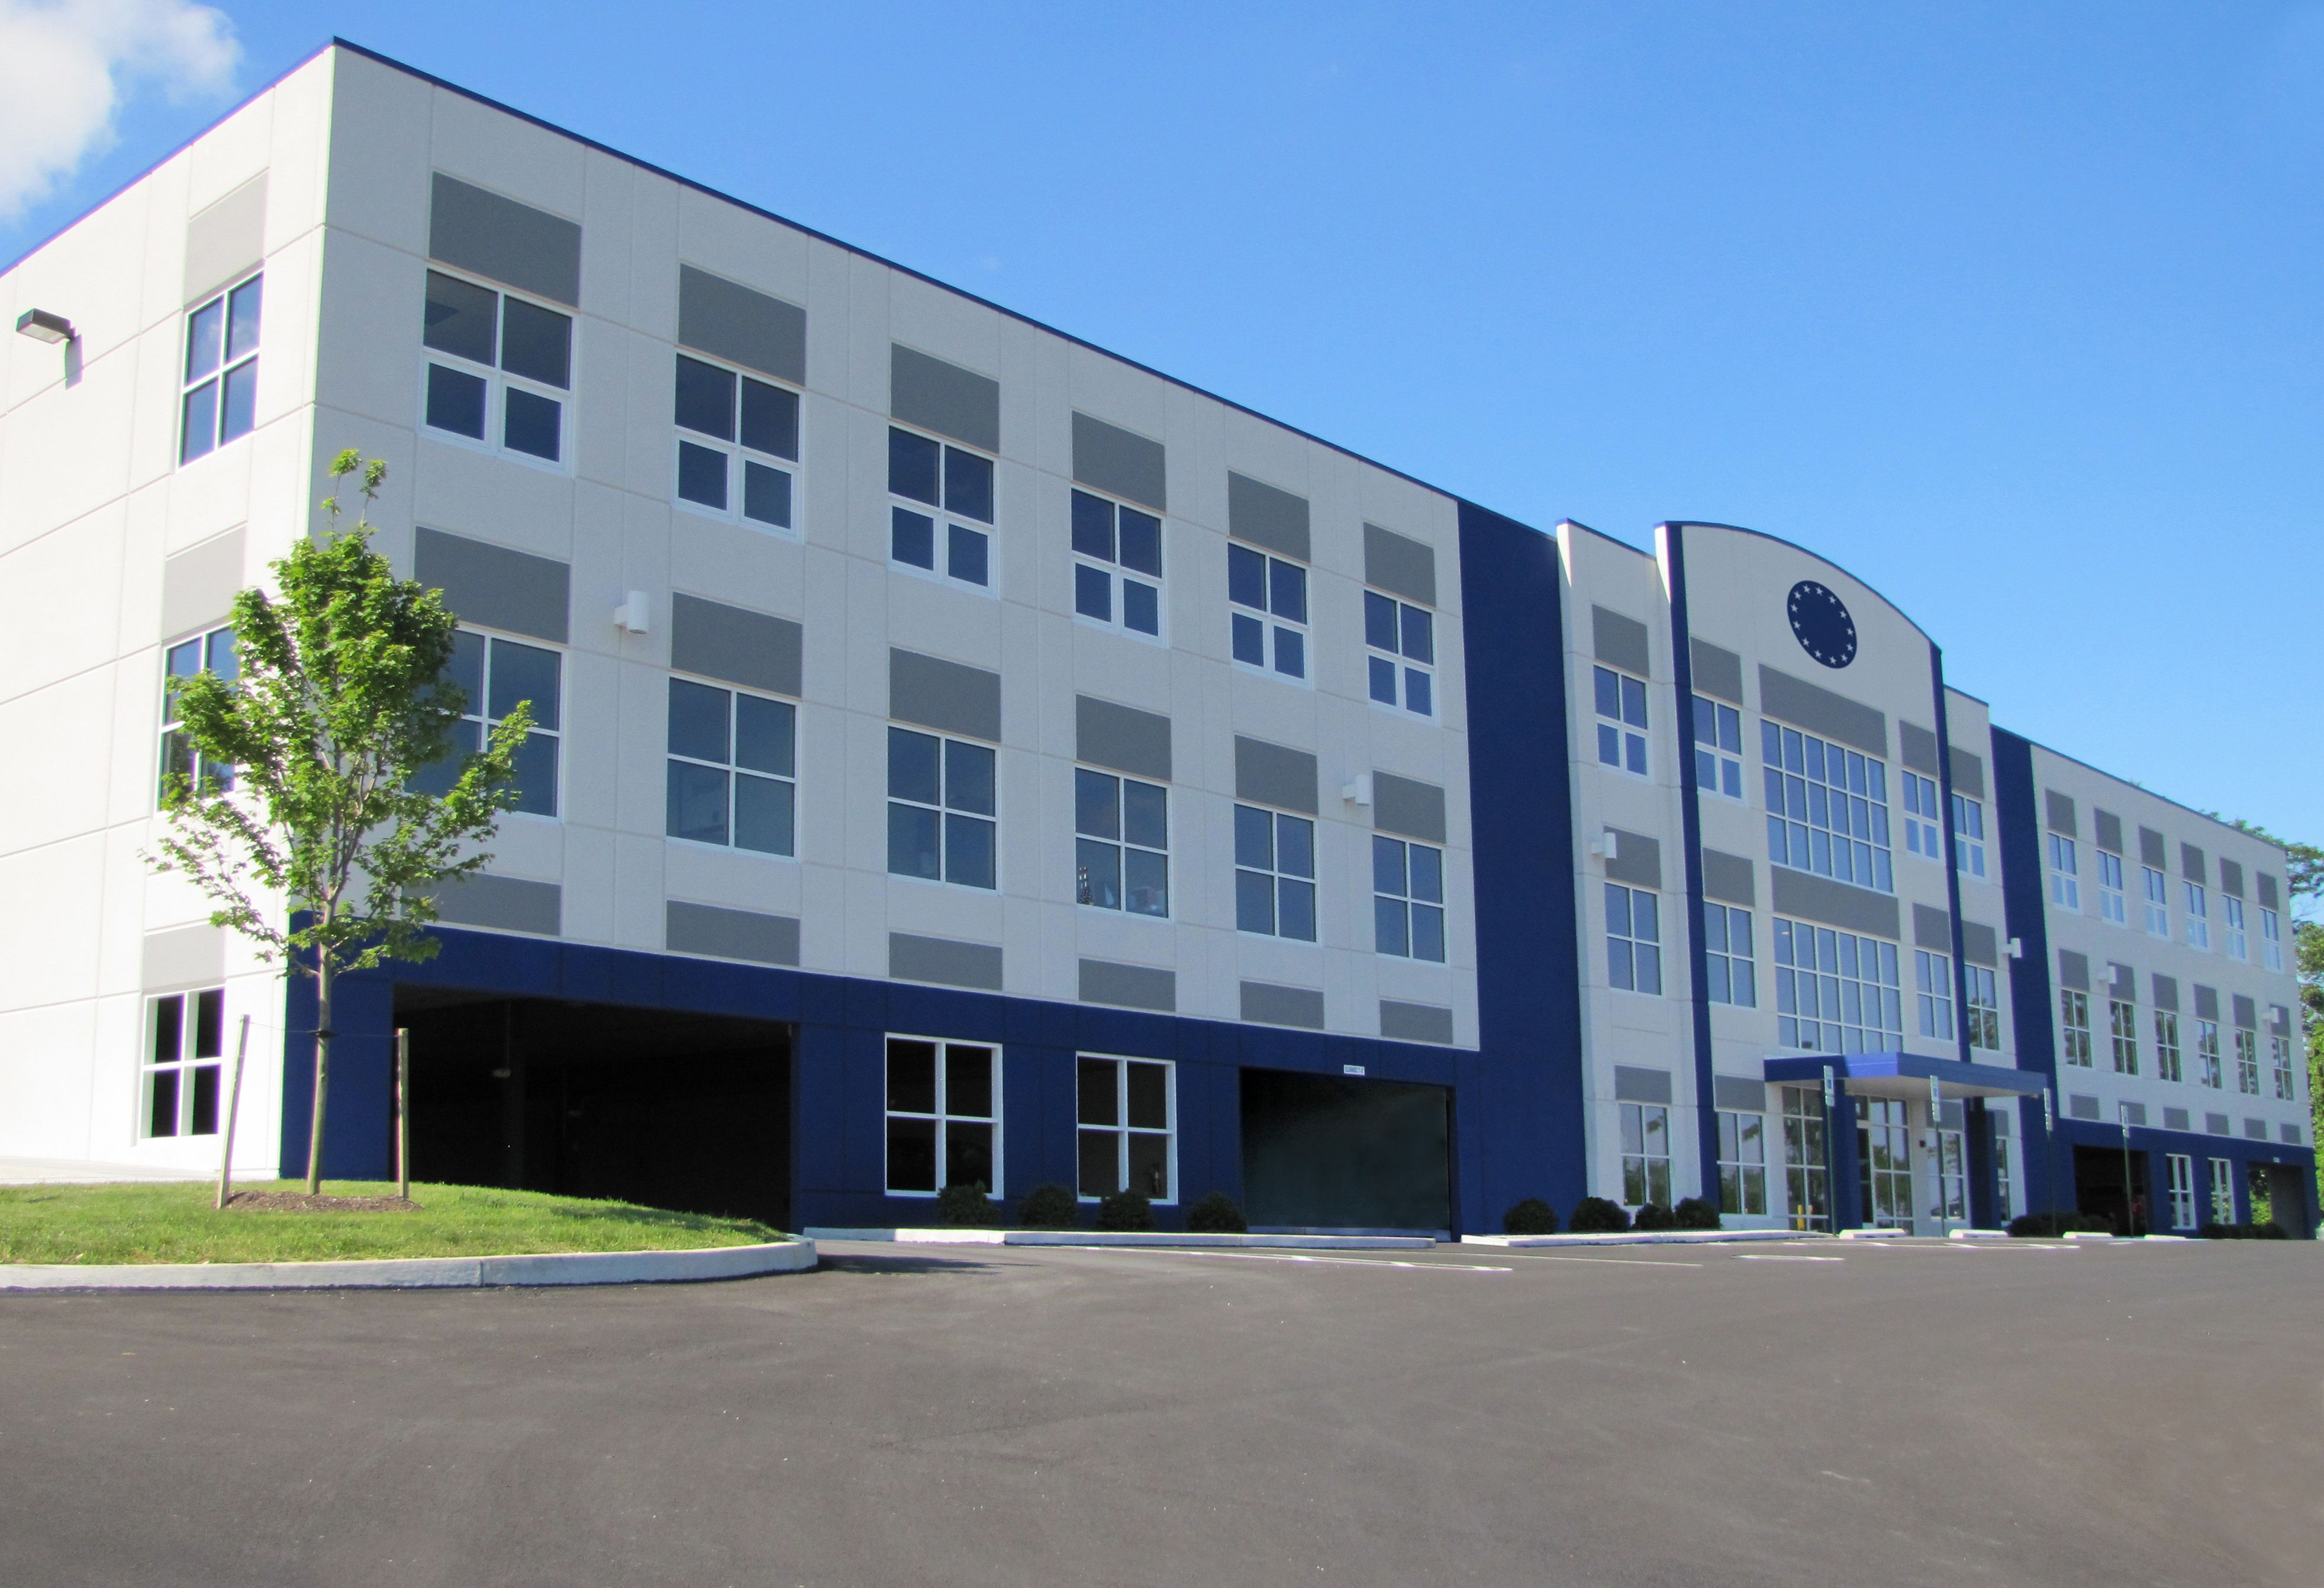 4.700 qm Fläche für Büros und Lager: Das neue Firmengebäude von American Mint in Mechanicsburg, Pennsylvania